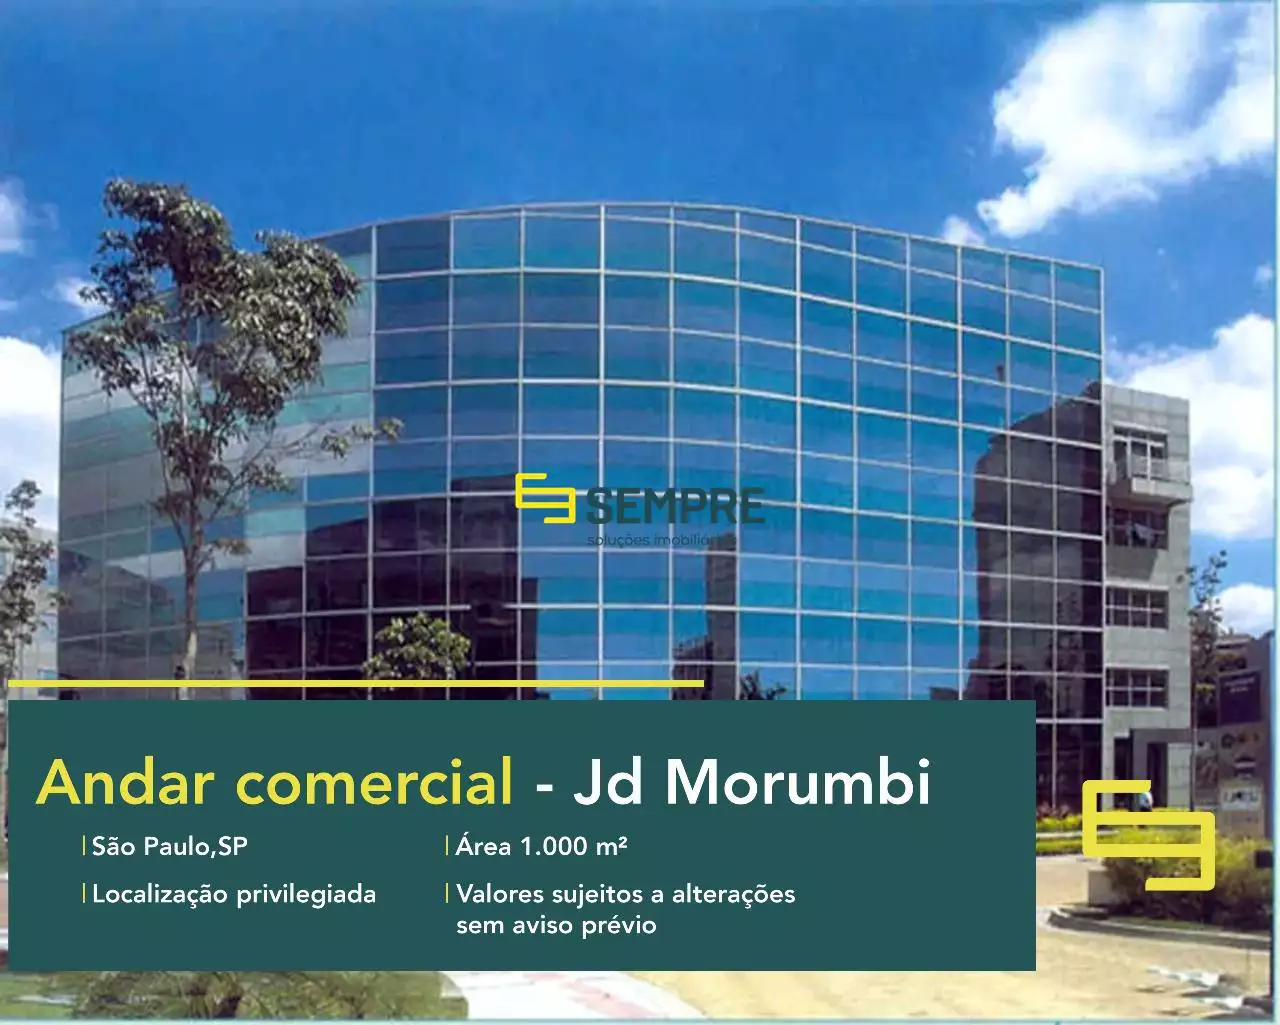 Andar corrido no Jardim Morumbi para locação - América Business, em excelente localização. O ponto comercial conta com área de 1.000 m².